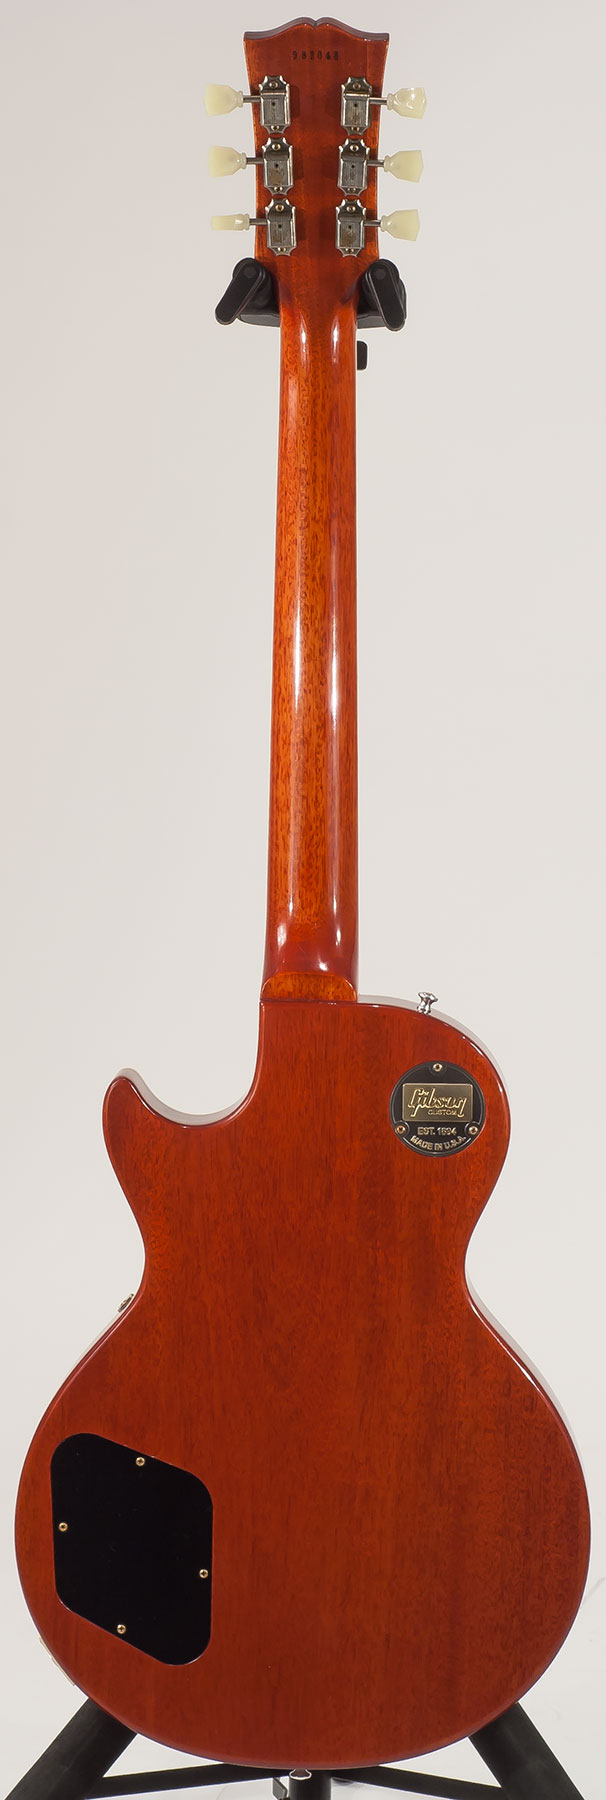 Gibson Custom Shop Les Paul Standard 1959 2h Ht Rw - Vos Vintage Cherry Sunburst - Guitarra eléctrica de corte único. - Variation 1